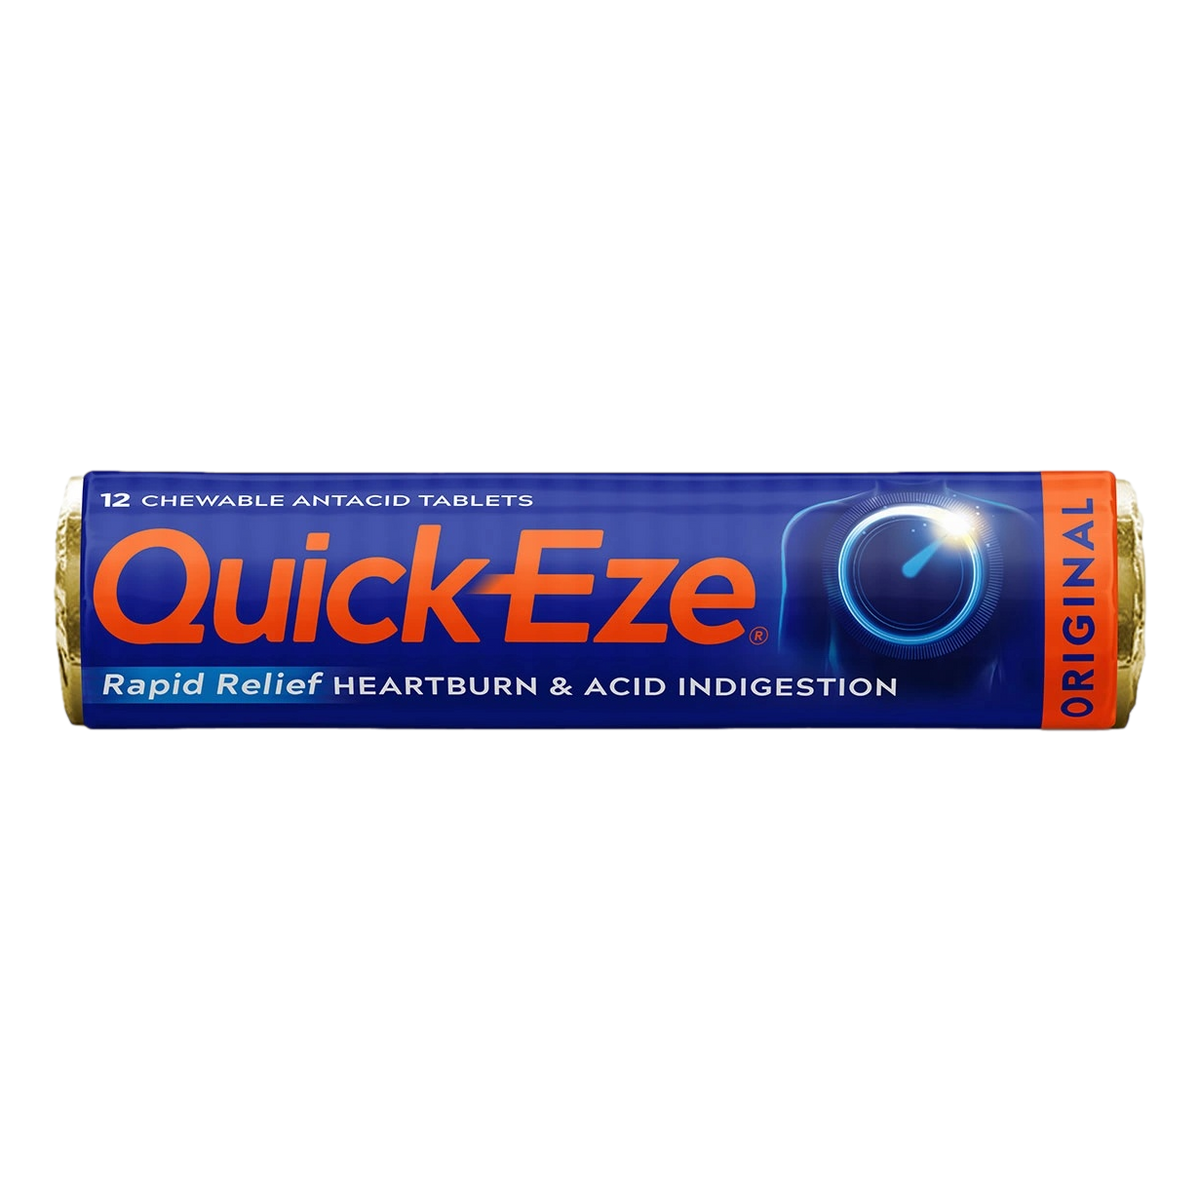 Walco Quick-Eze Original Antacid Tablets 12 Pack